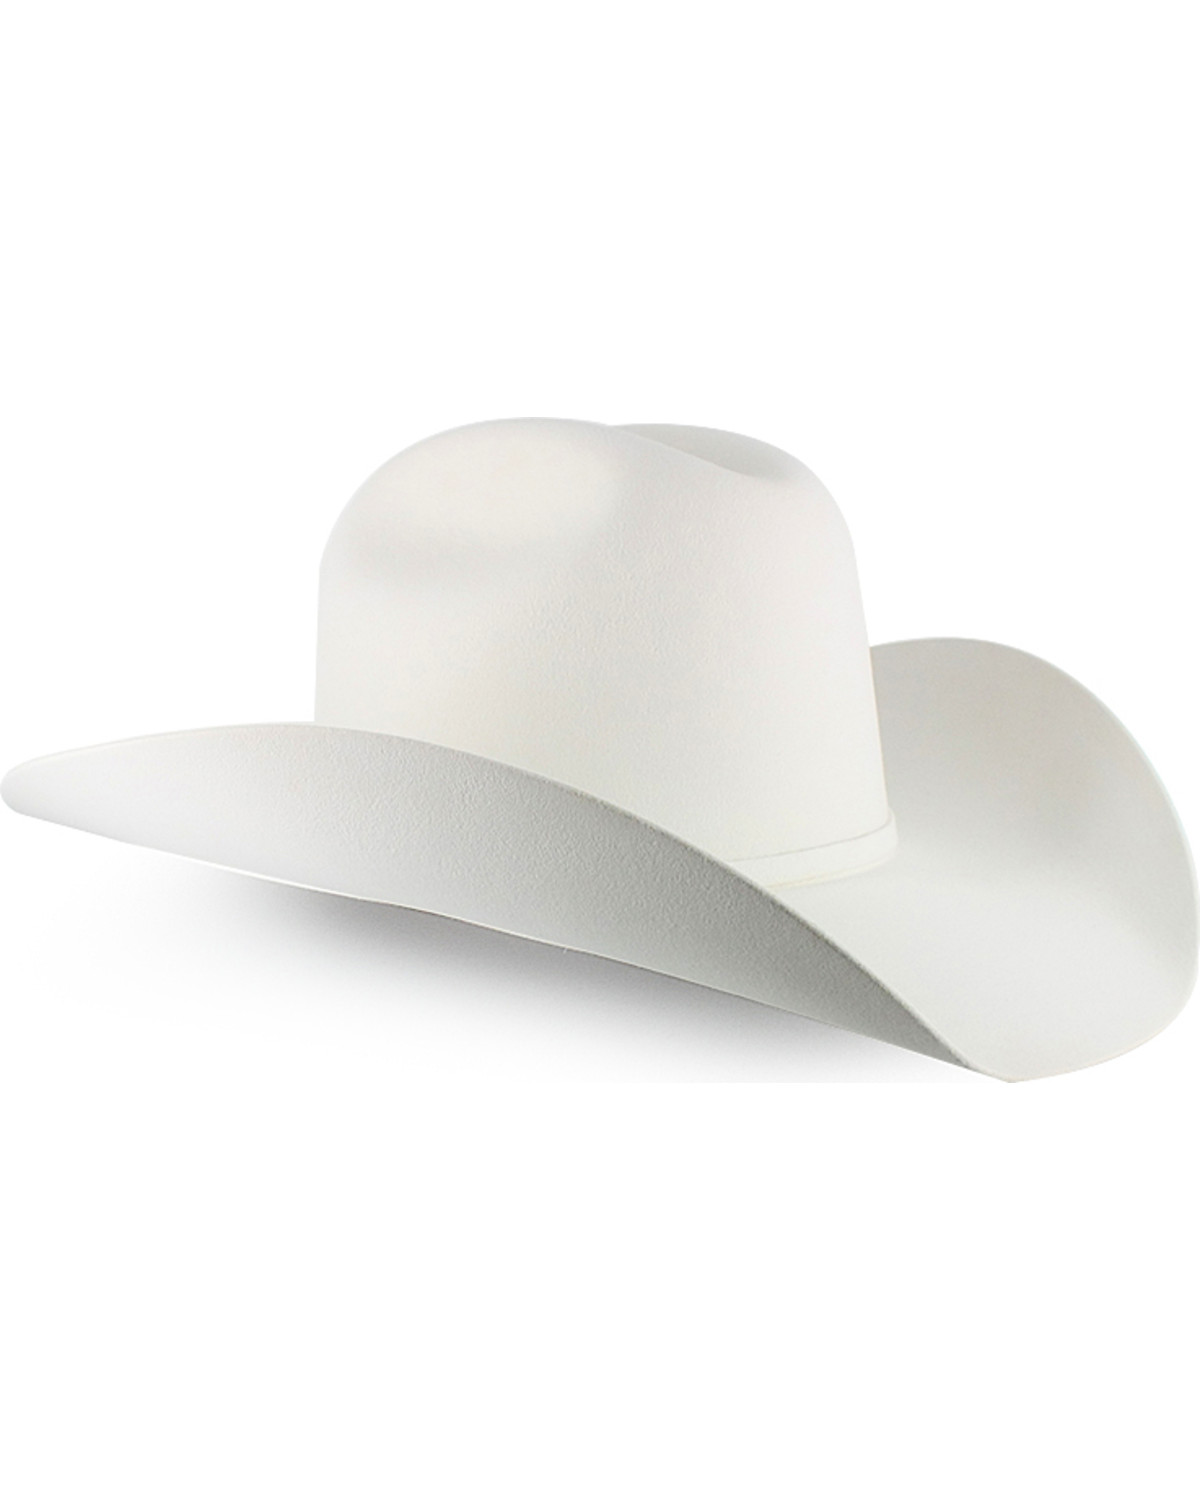 Serratelli Palo Alto 6X Felt Cowboy Hat